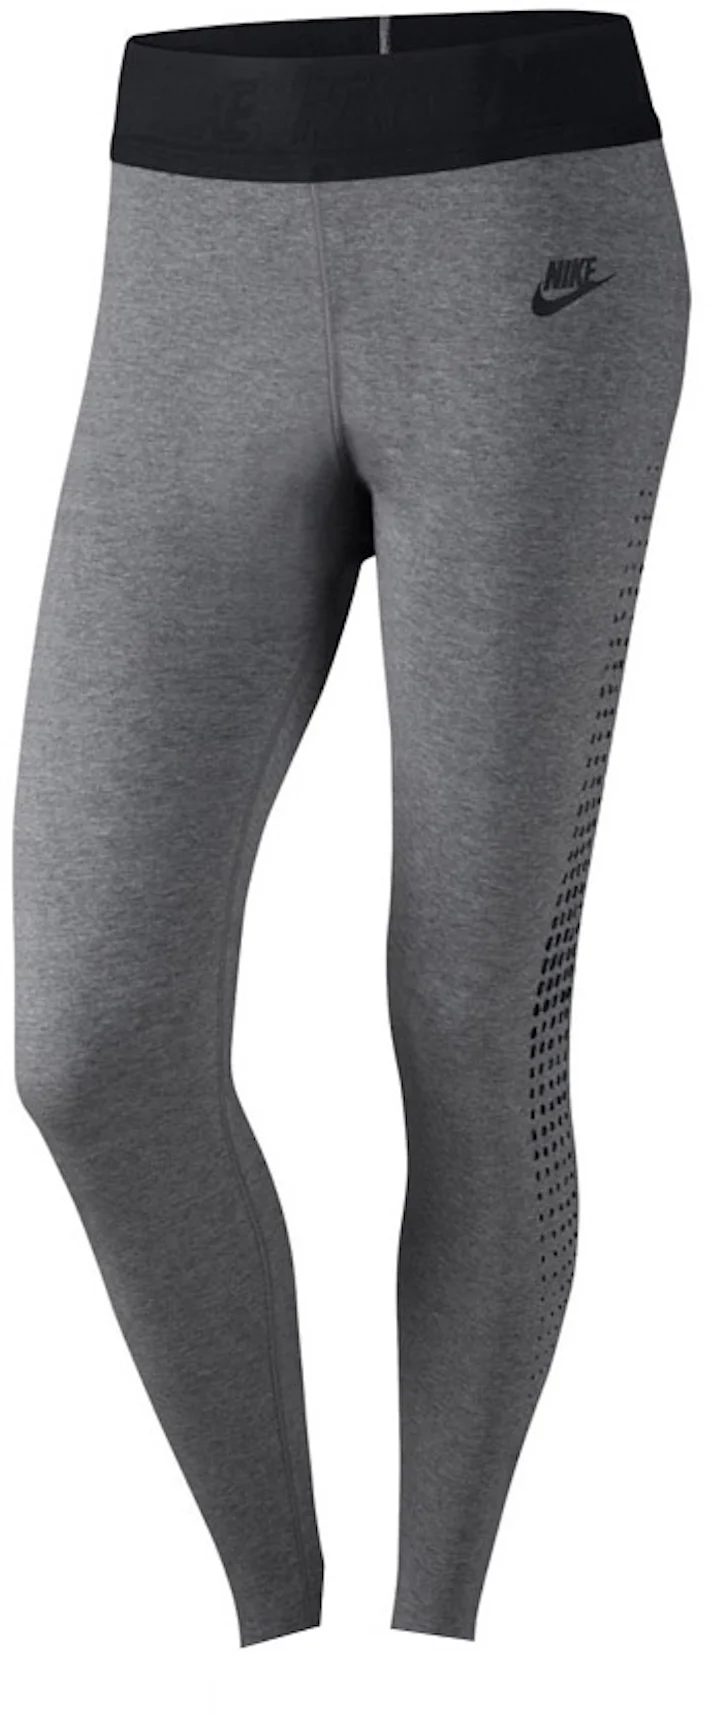 Nike Women’s Leg-a-See Leggings CJ2297 Grey Black 063 Cotton NWOT Size XS